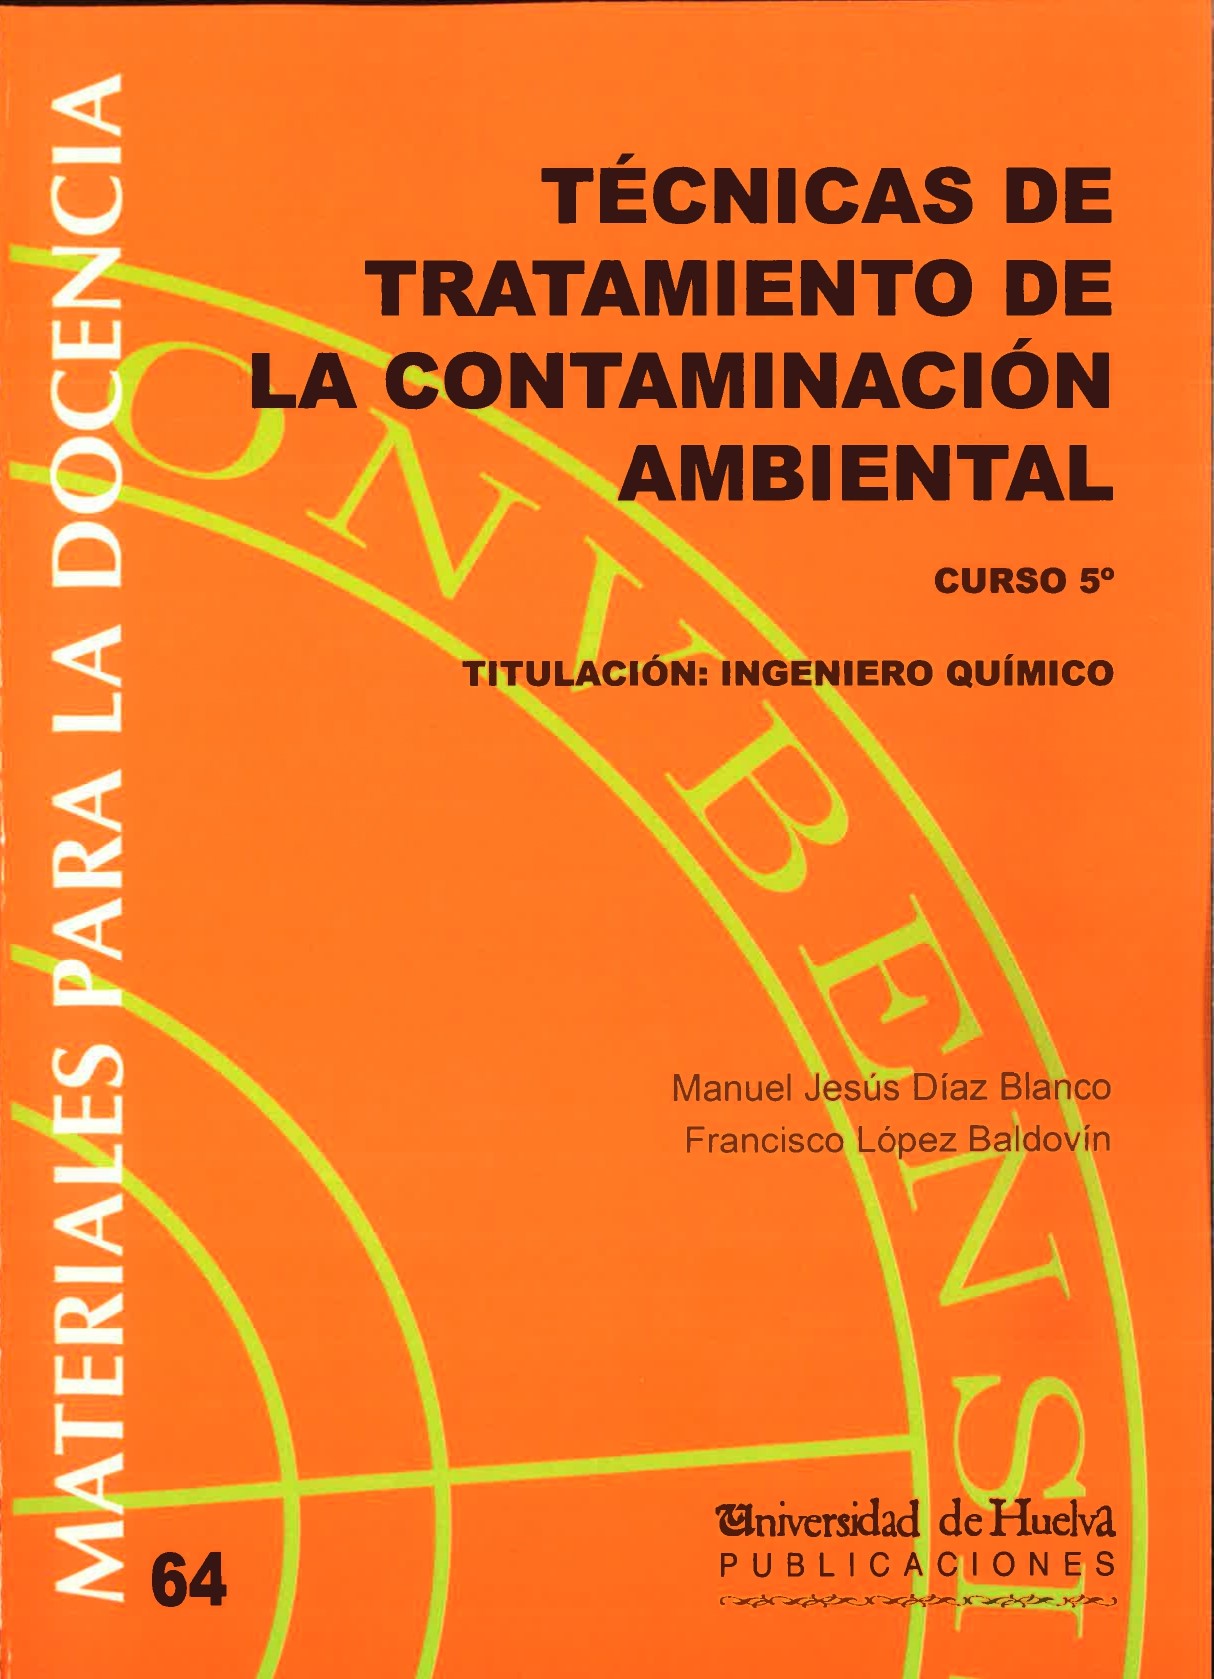 Imagen de portada del libro Técnicas de Tratamiento de la Contaminación Ambiental